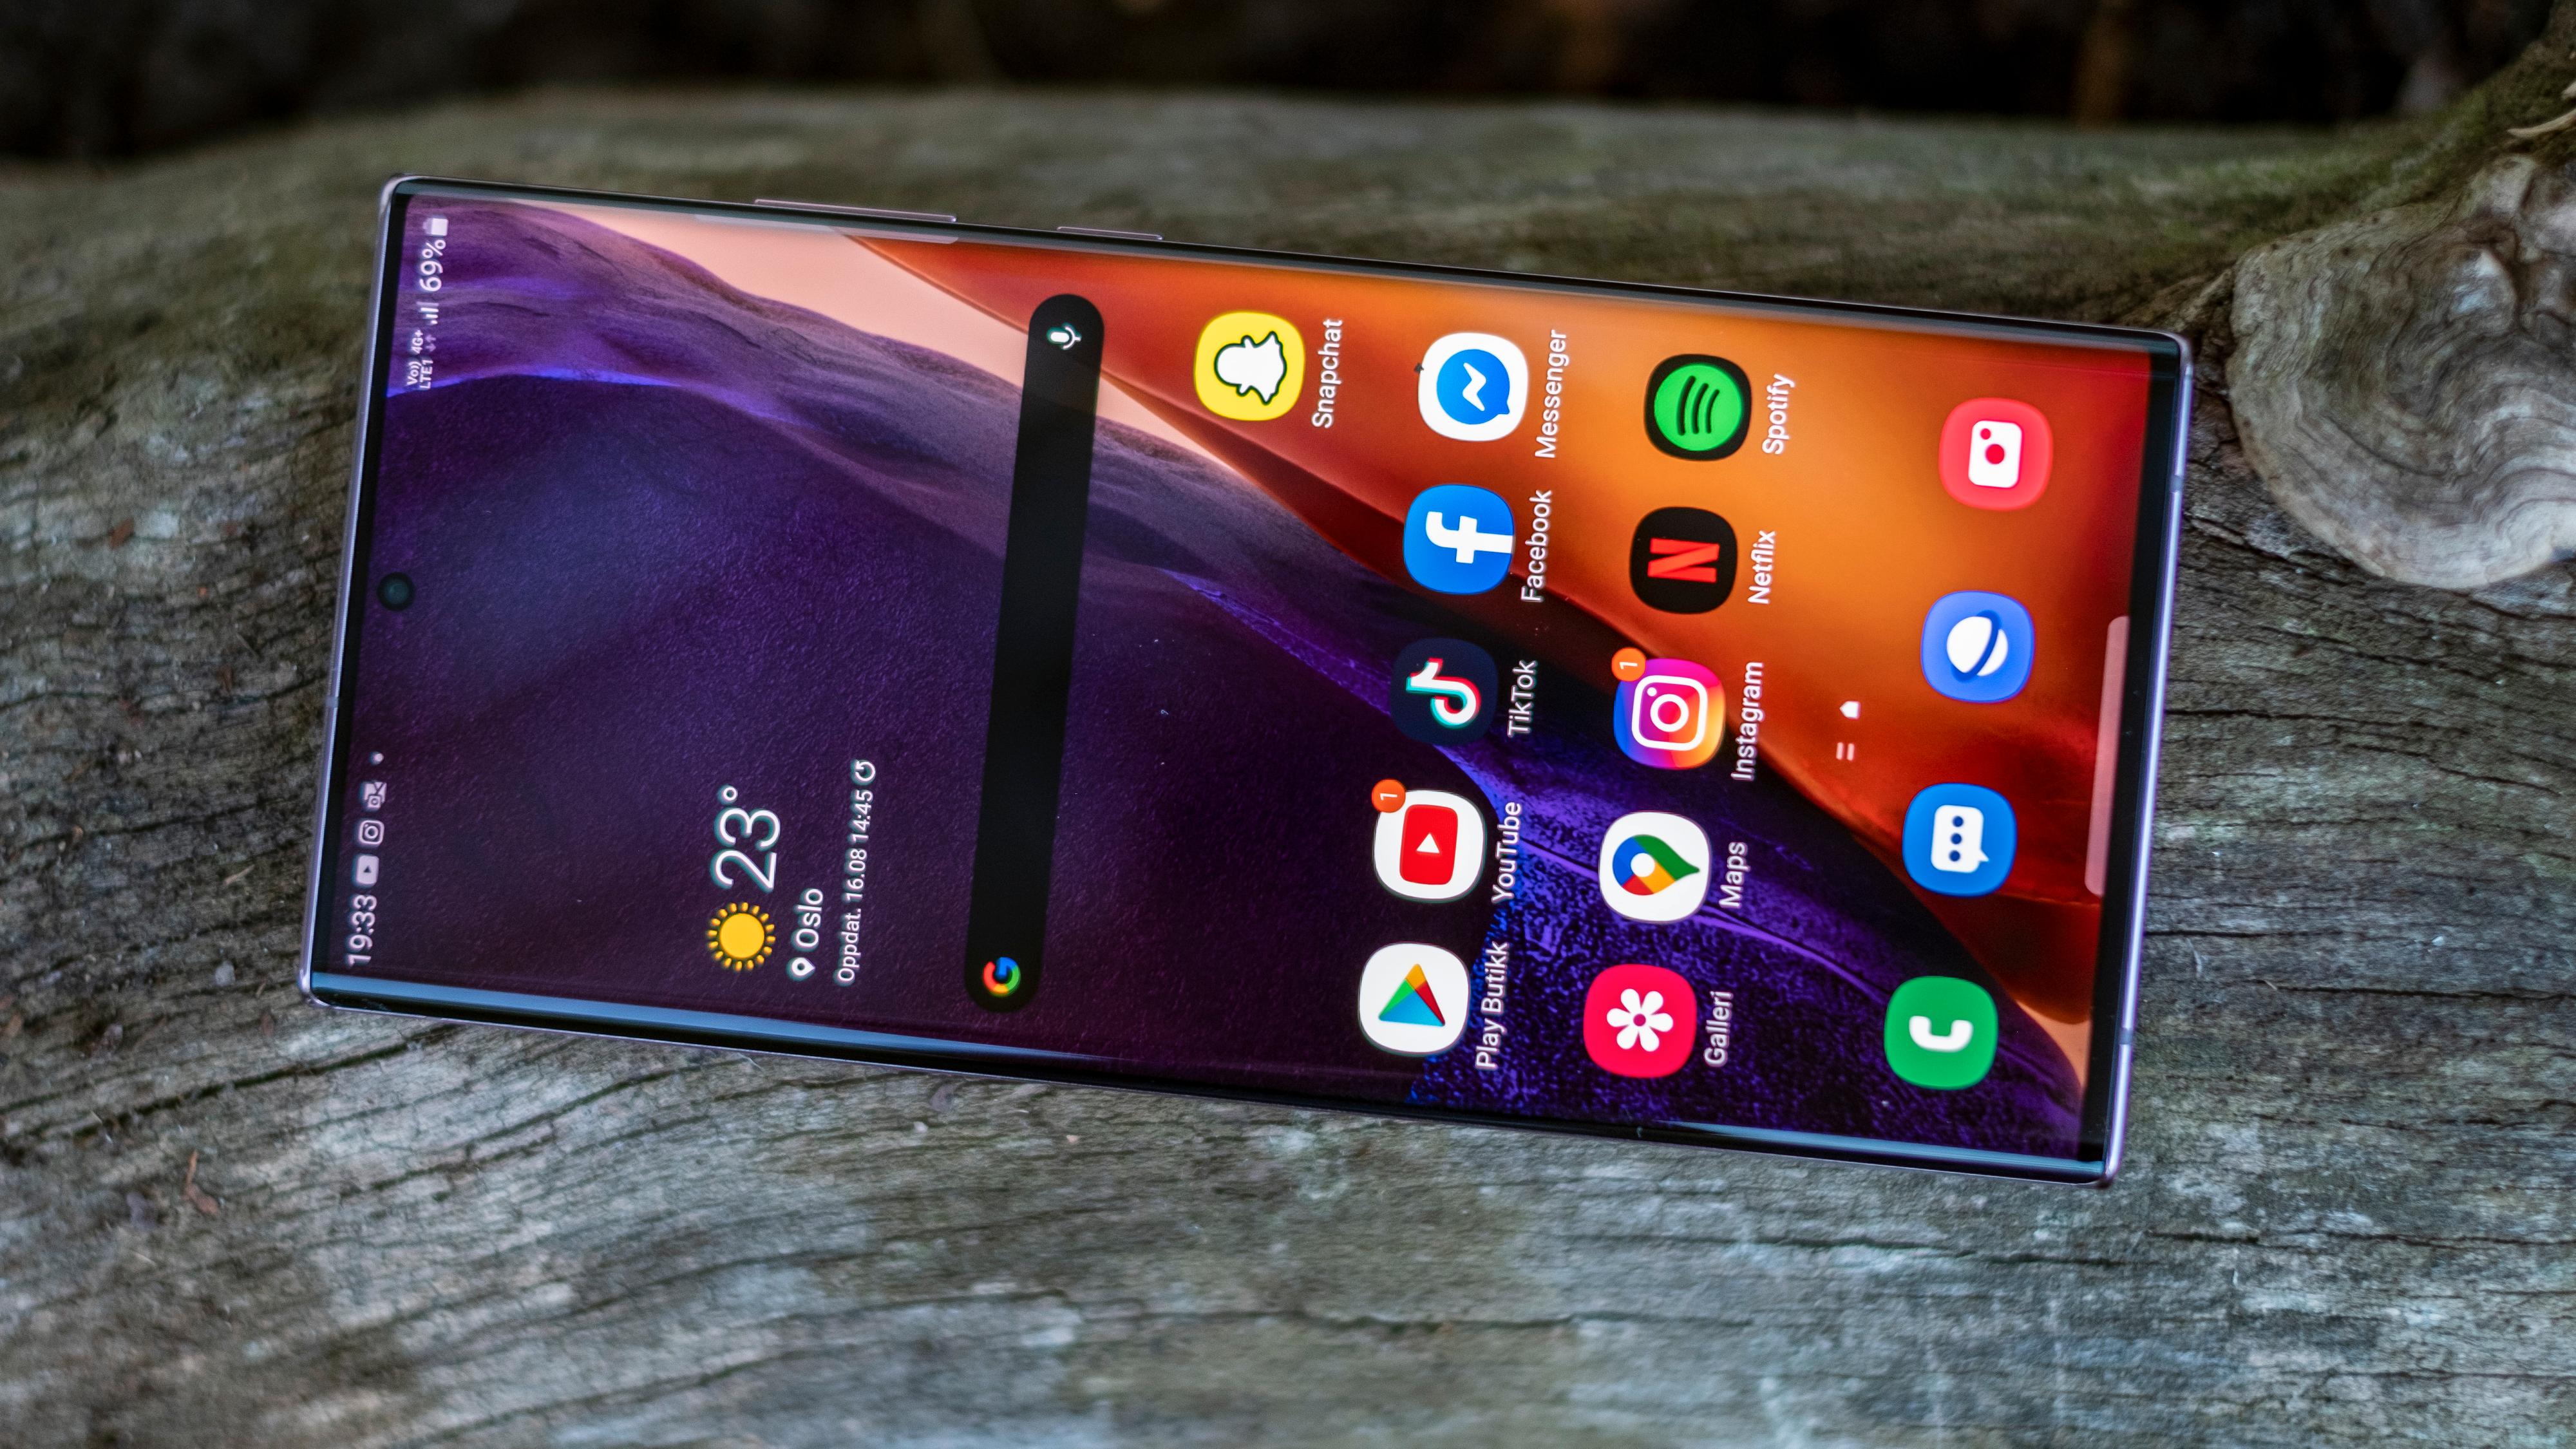 Samsung har laget den sannsynligvis beste skjermen vi har sett i noen mobil. Her kan de kunsten å lage lyssterk, fargeriktig og behagelig skjerm å se på til fingerspissene.